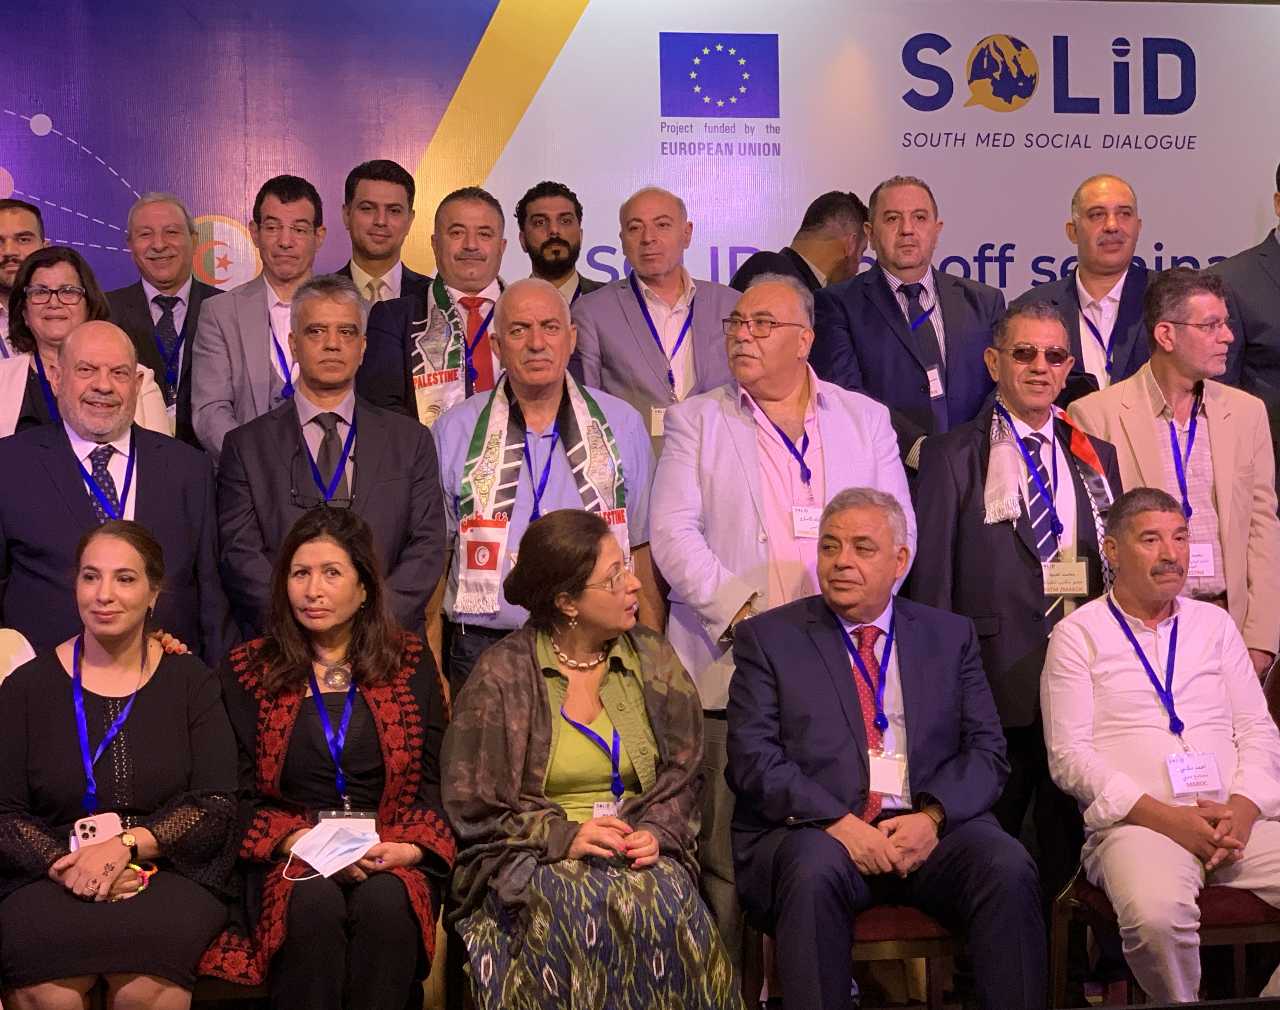 Méditerranée : Syndicats, patronat, société civile... Comment promouvoir le dialogue social ?